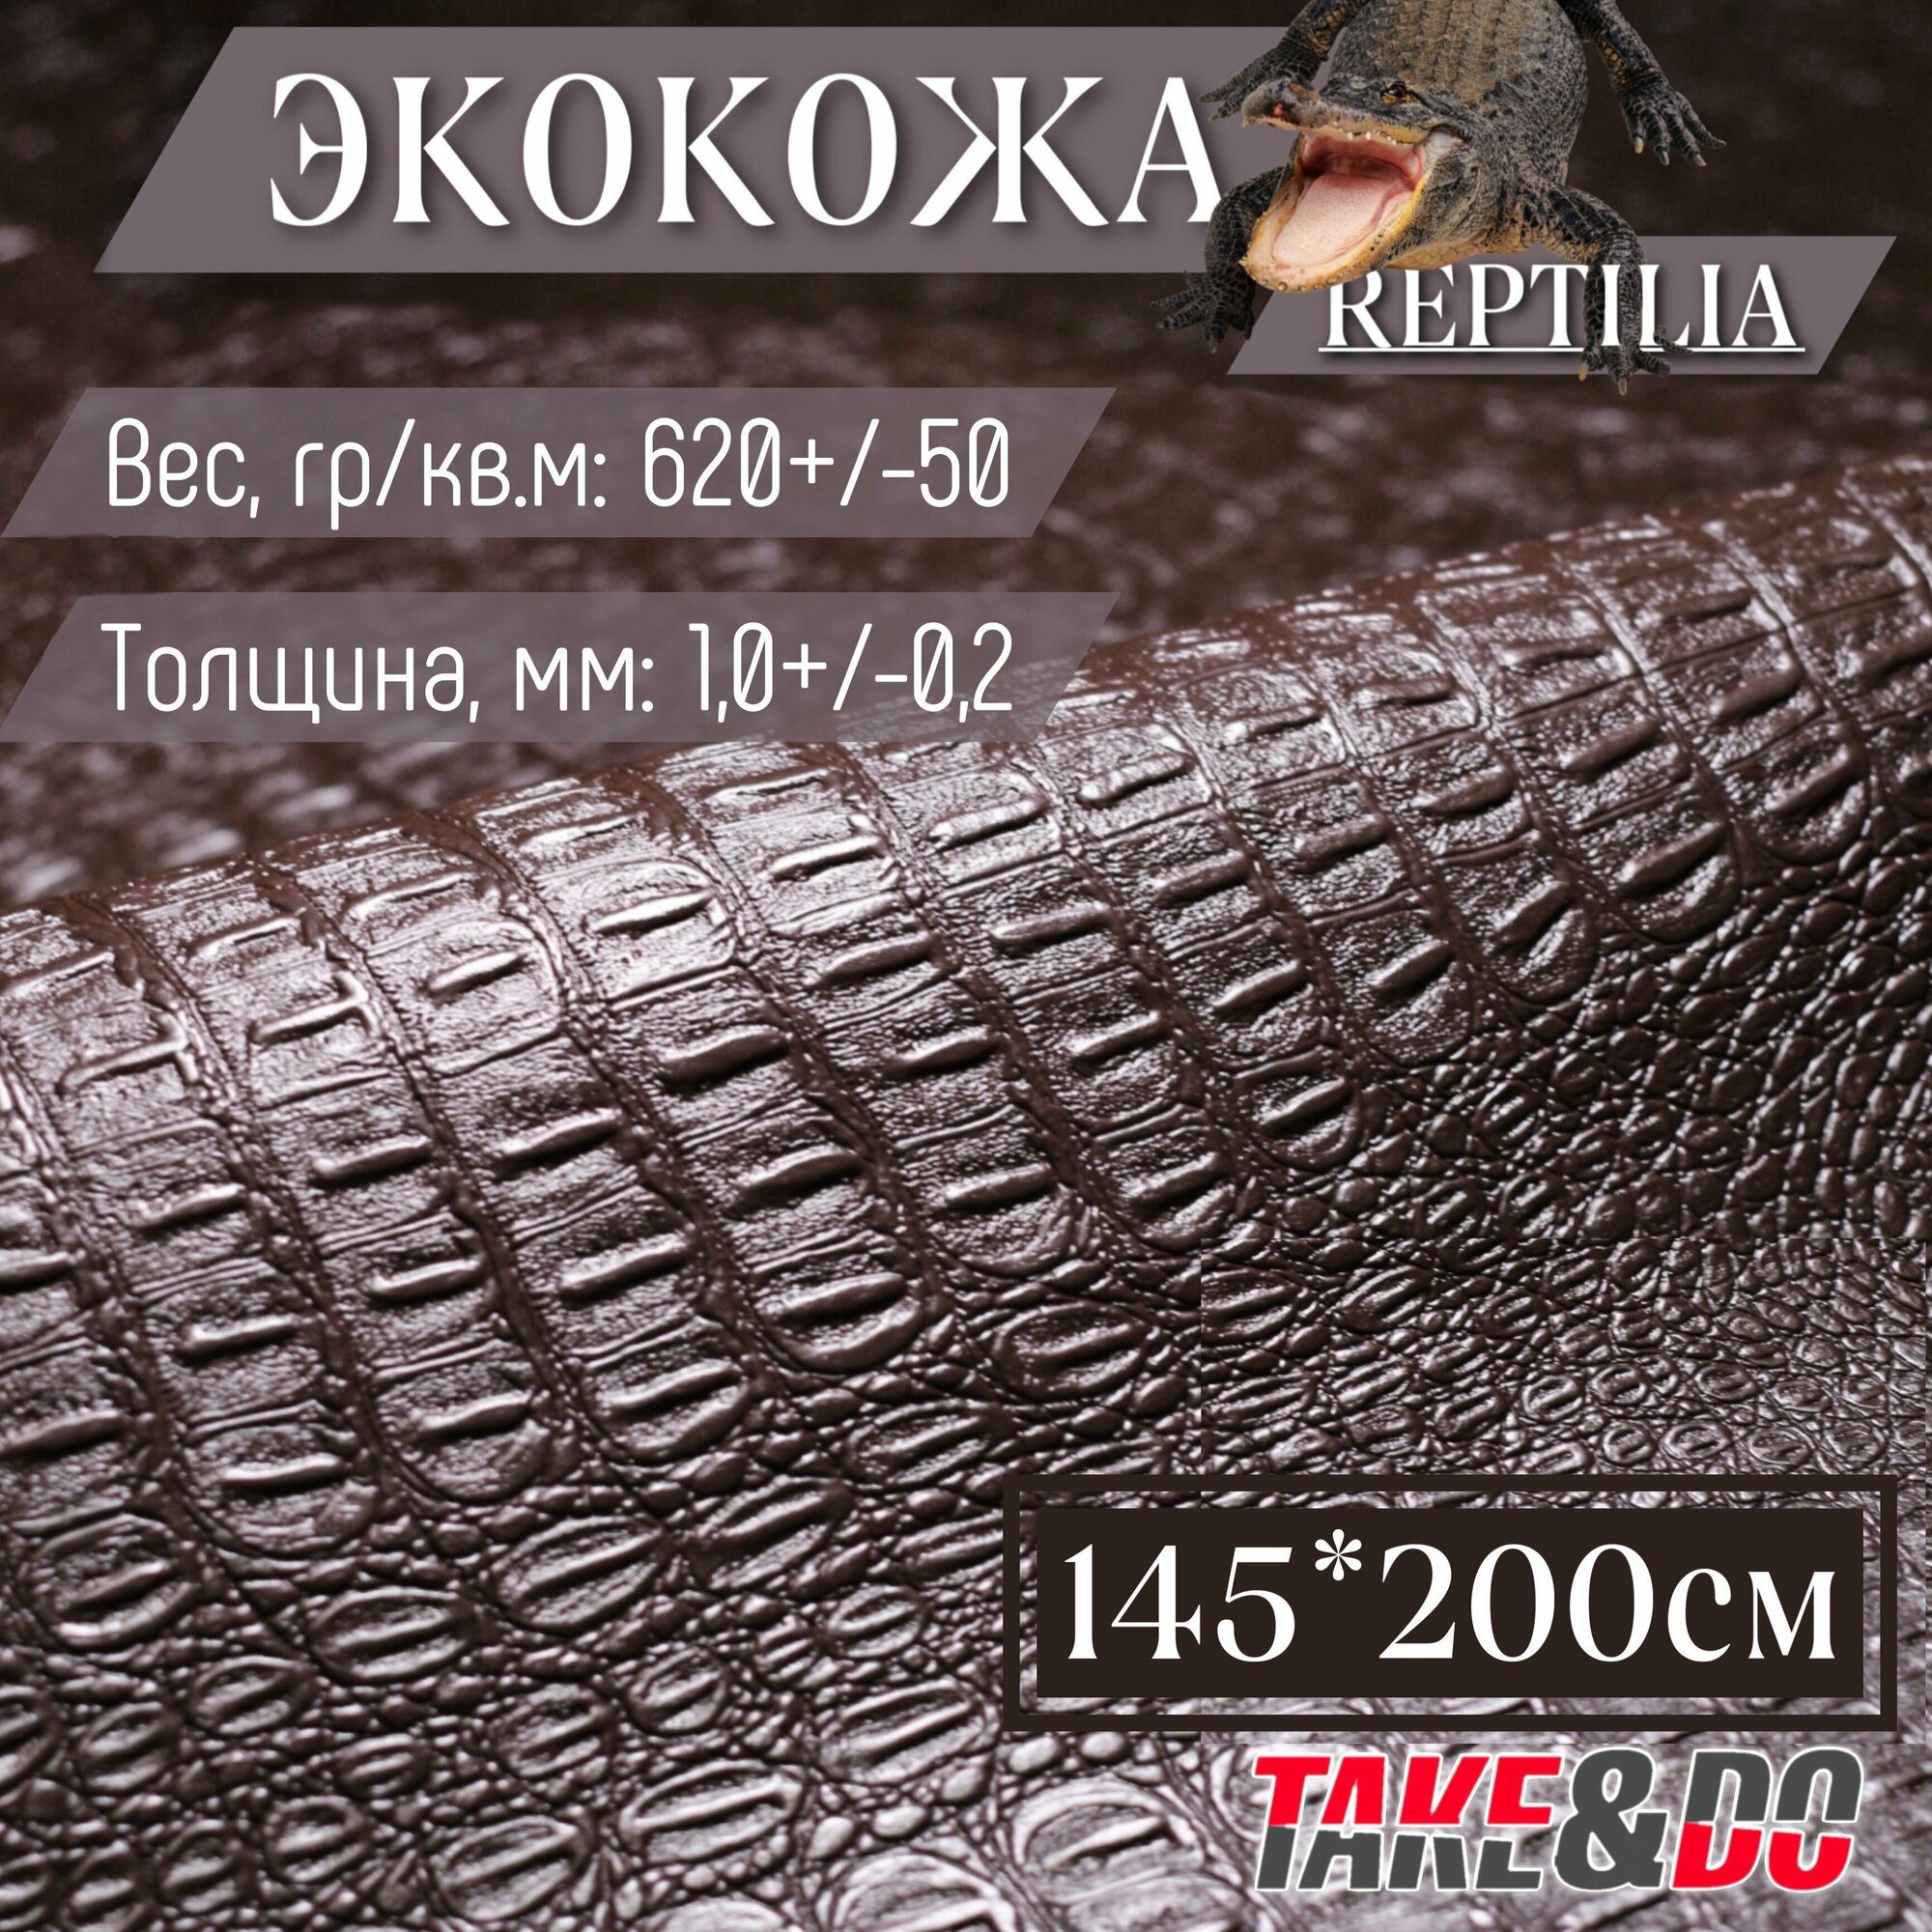 Экокожа имитация кожи рептилии Коричневый - 200 х 145 см, искусственная кожа